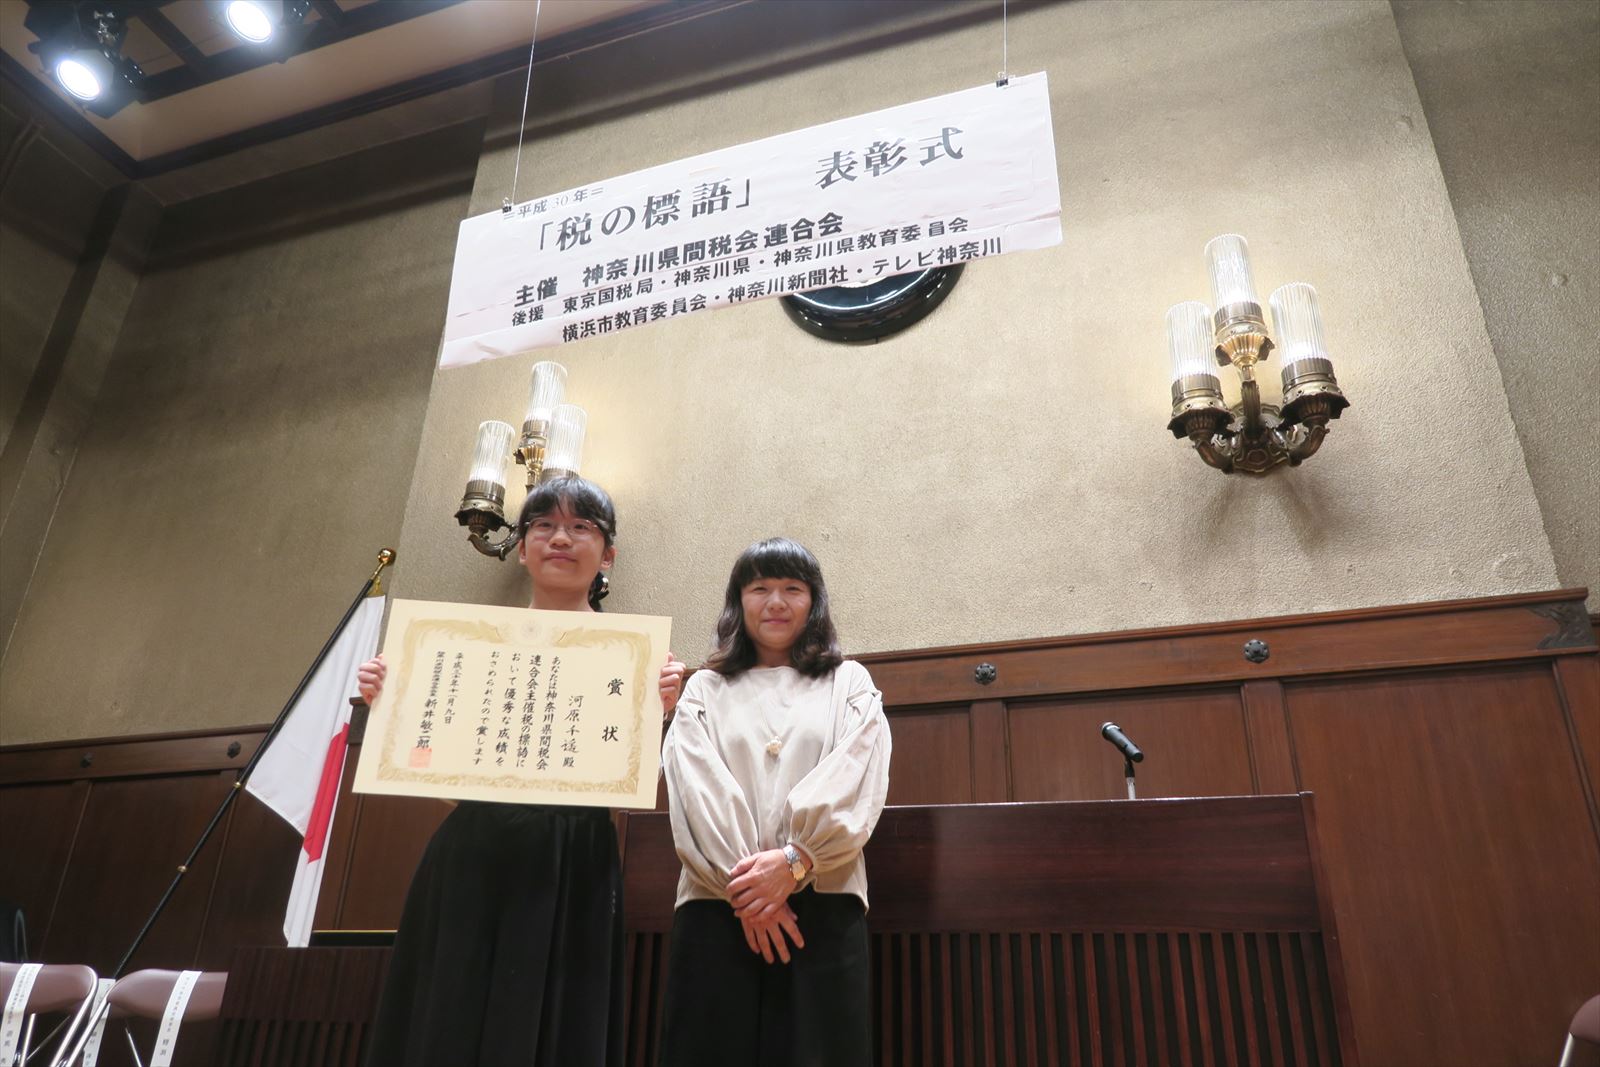 平成30年度 税の標語 表彰式 神奈川 港北間税会